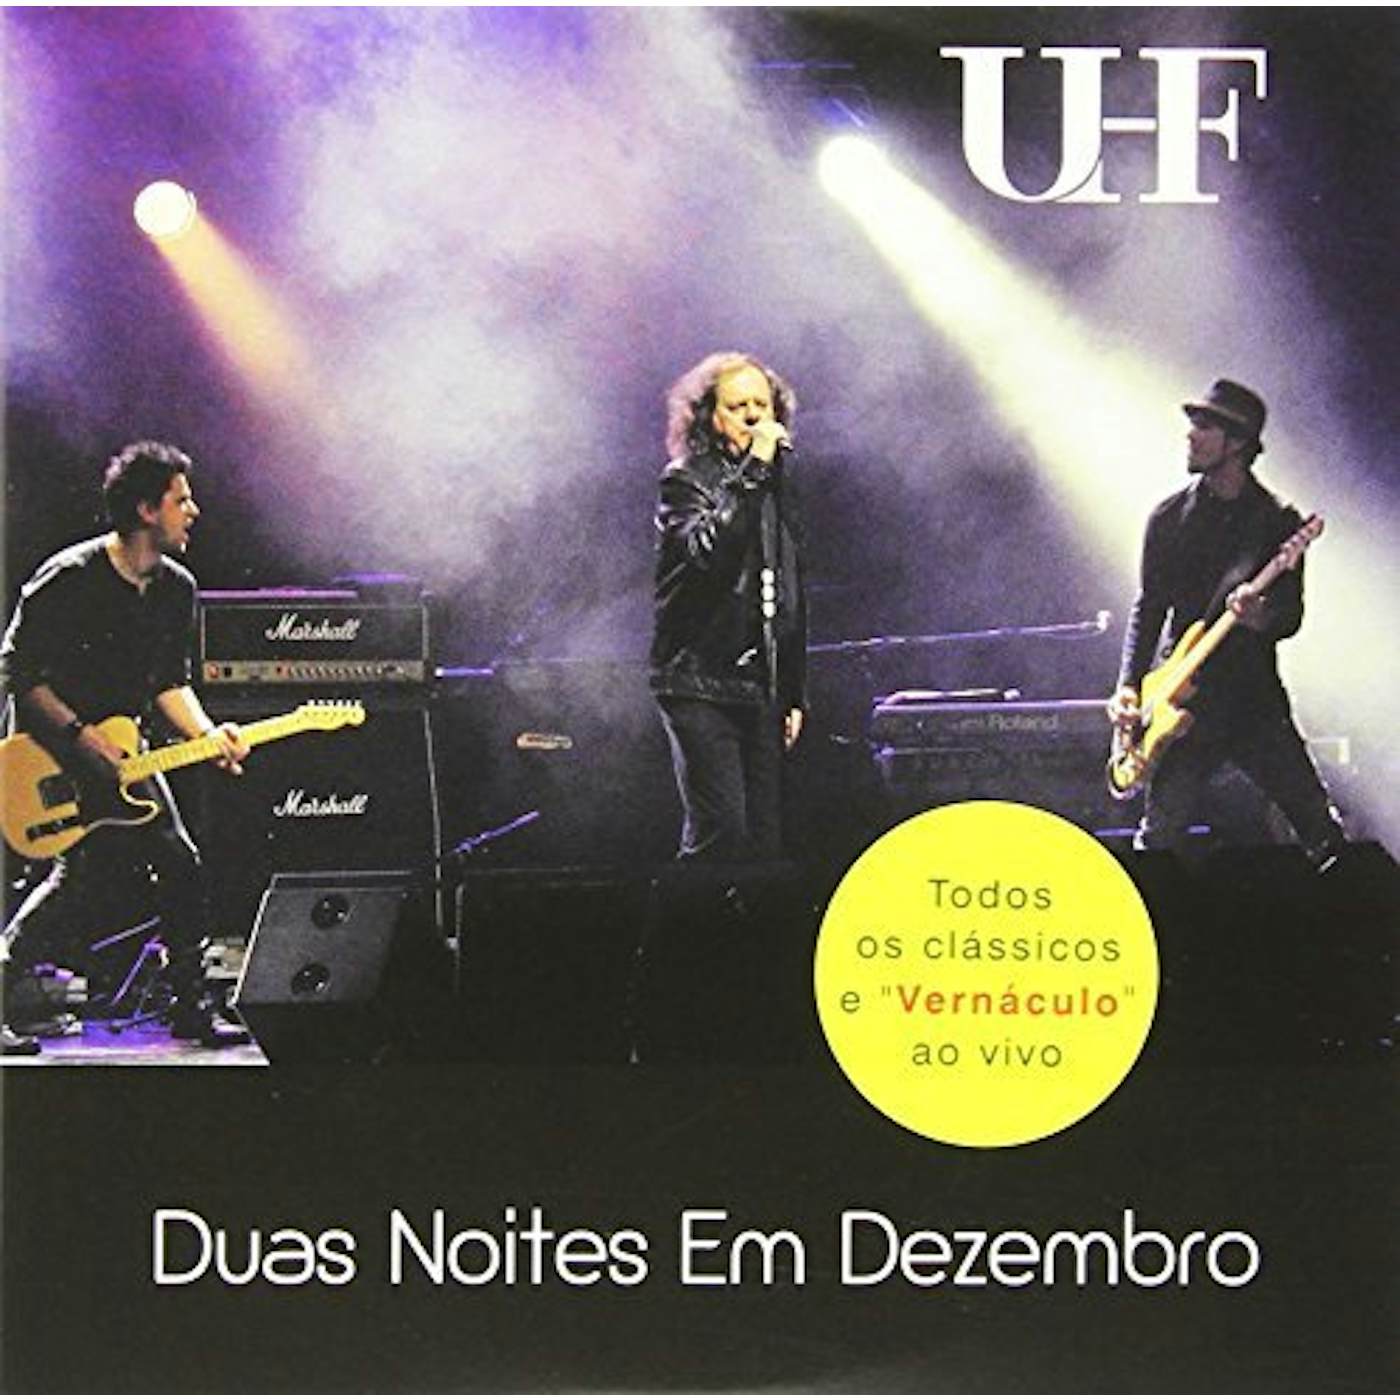 UHF DUAS NOITES DE DEZEMBRO LIVE CD